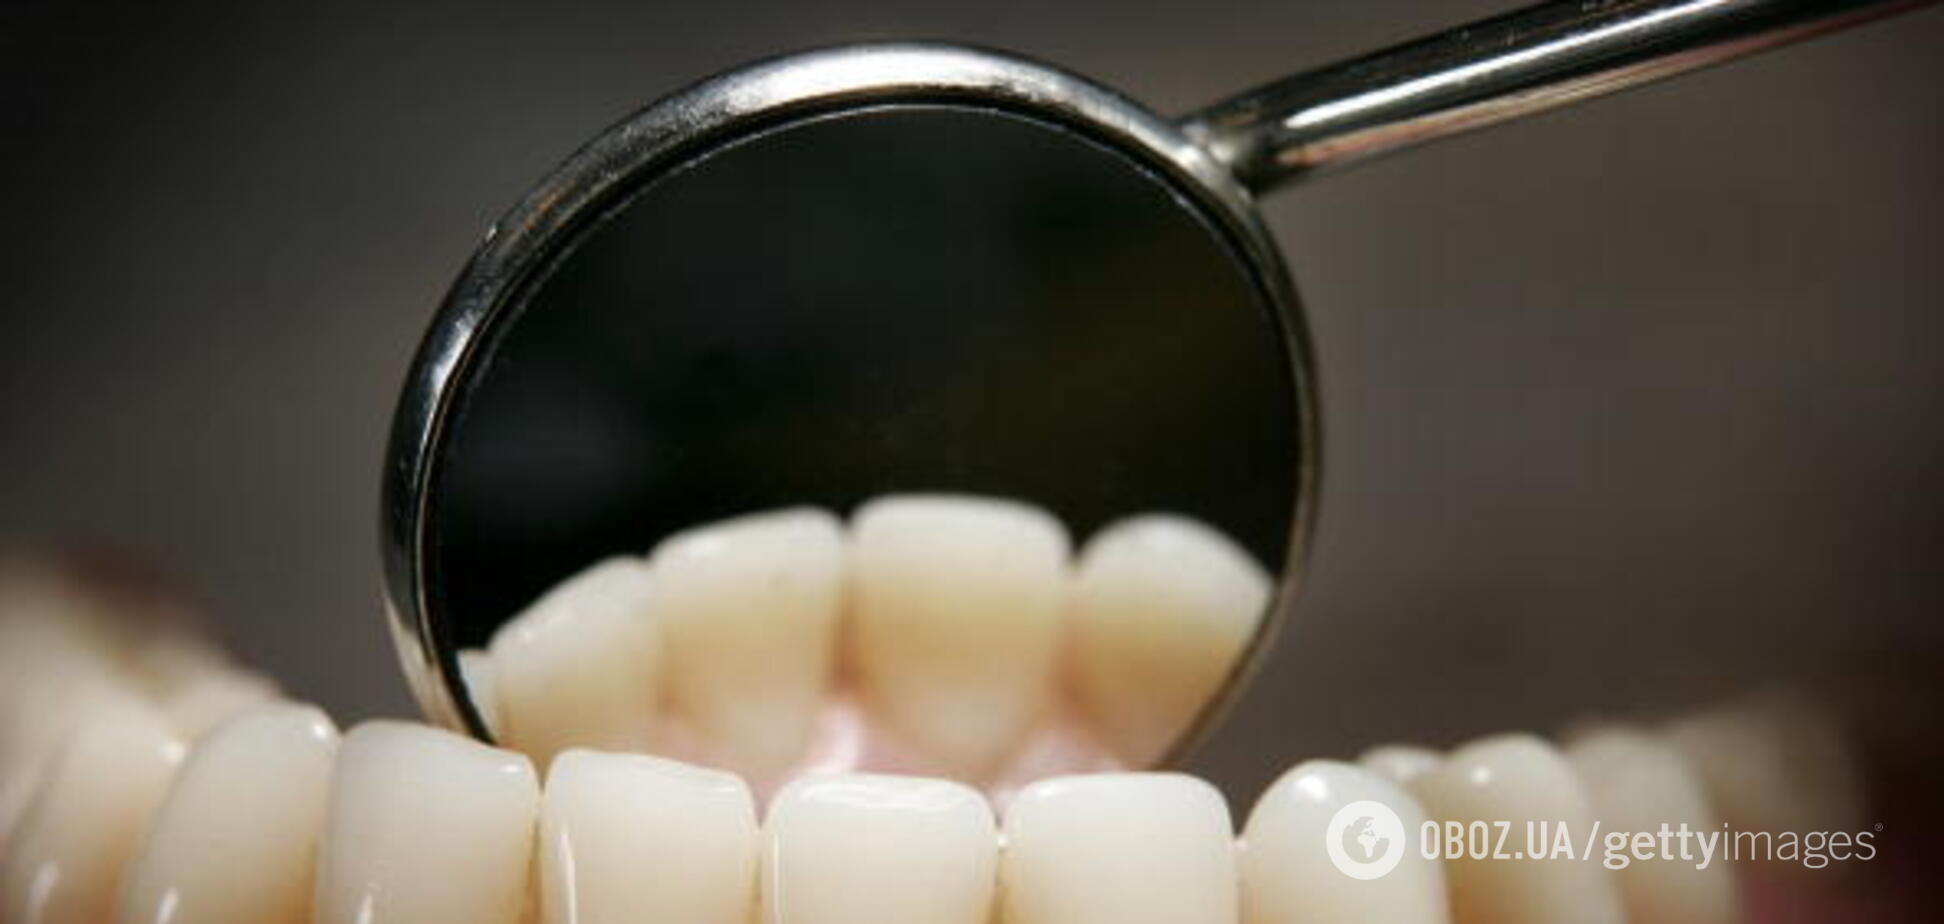 Самая опасная болезнь: врач рассказал о новой угрозе зубам украинцев